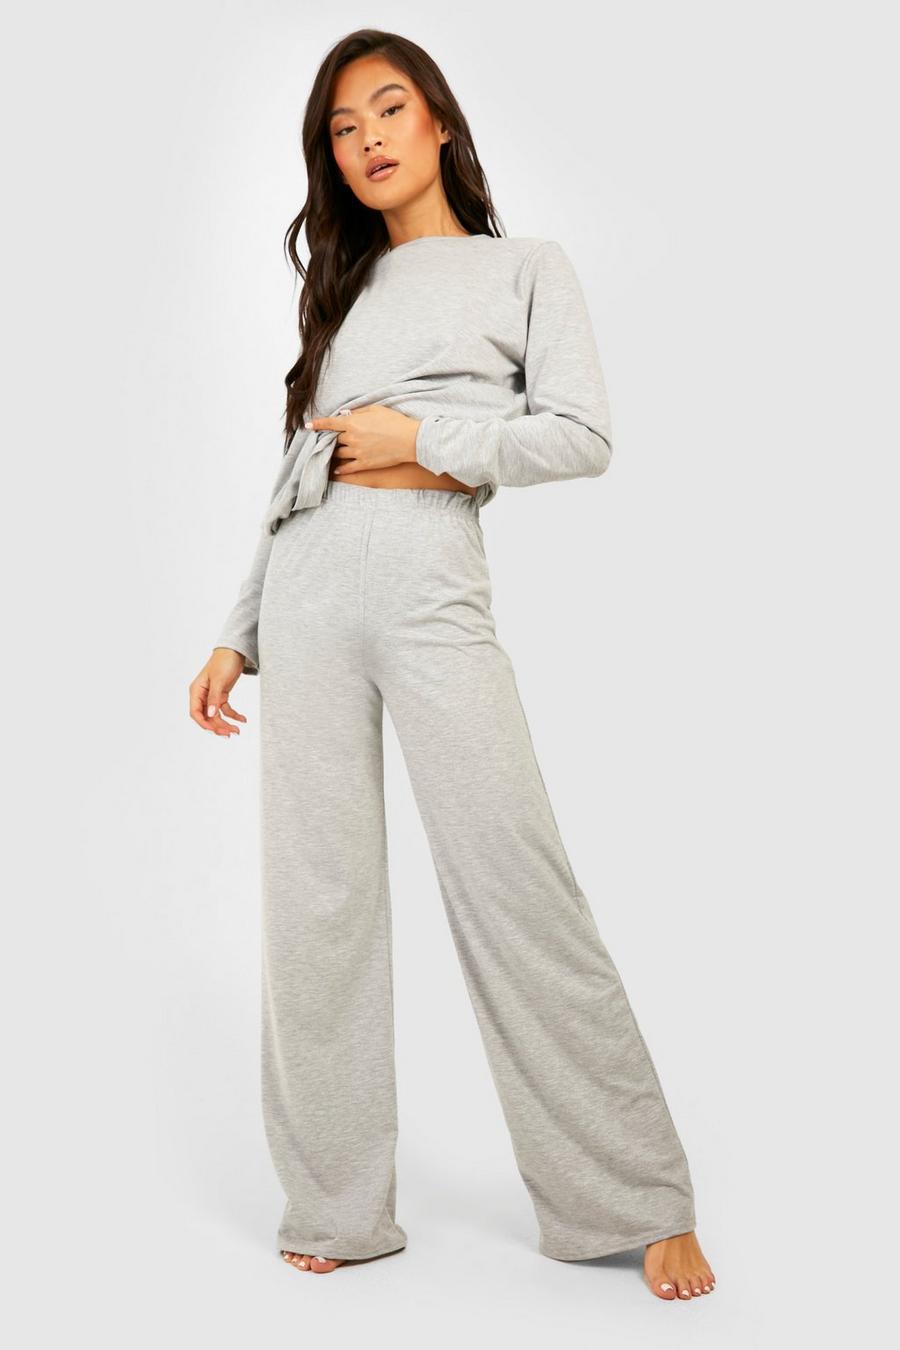 Pantalón básico para estar en casa - pieza intercambiable, Grey marl grigio